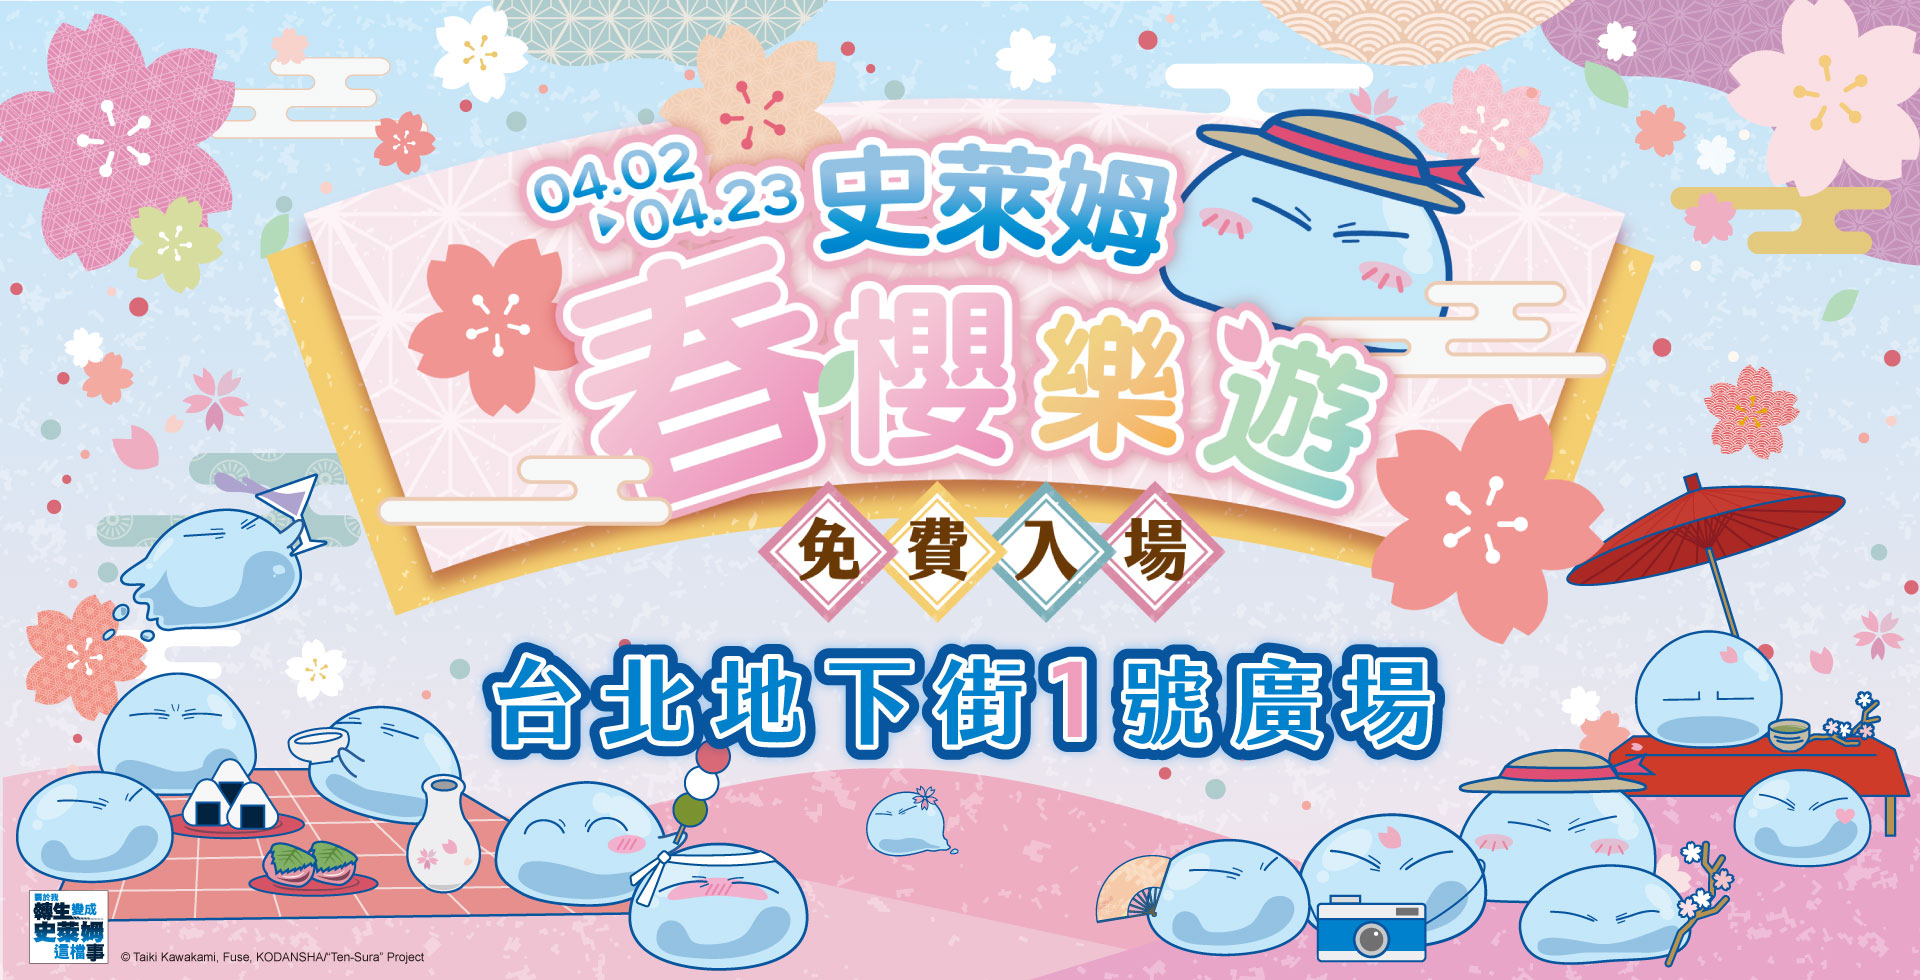 01 「史萊姆春櫻樂遊」快閃店將於4月2日台北地下街正式開幕！